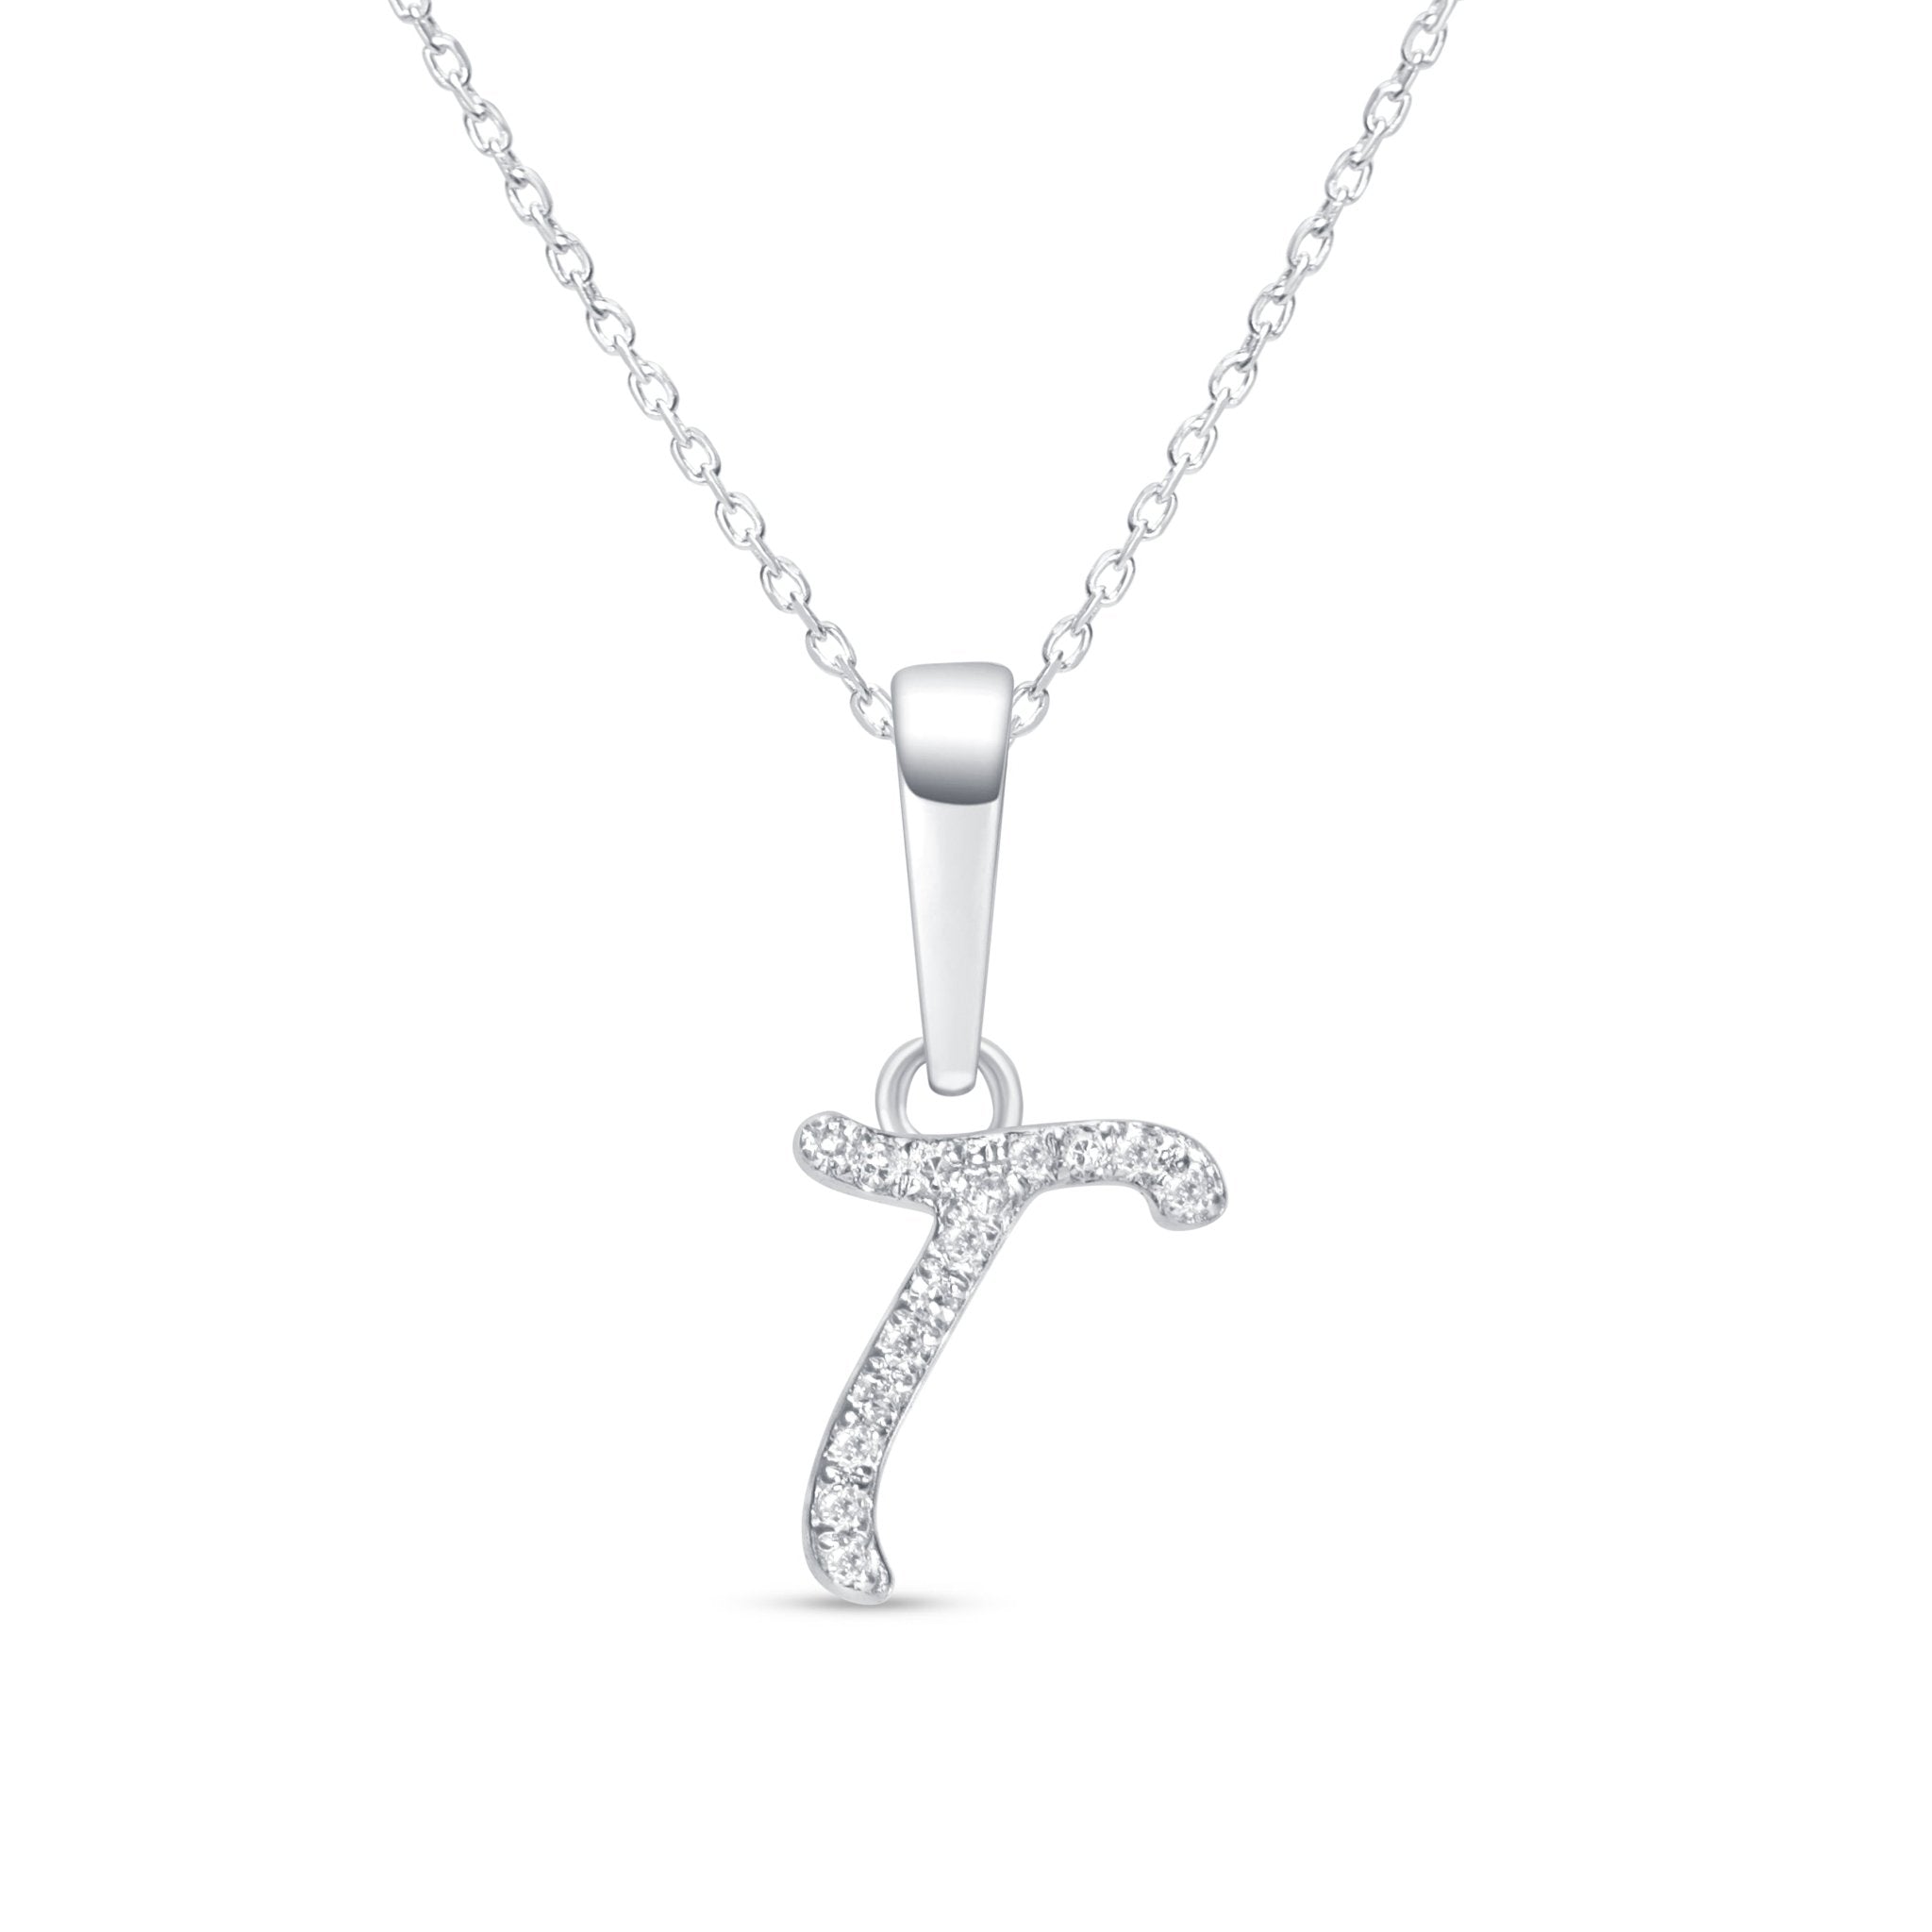 Cursive Diamond Initial Necklace - T Necklaces Estella Collection #product_description# 18557 14k Diamond Gemstone #tag4# #tag5# #tag6# #tag7# #tag8# #tag9# #tag10# 14k White Gold